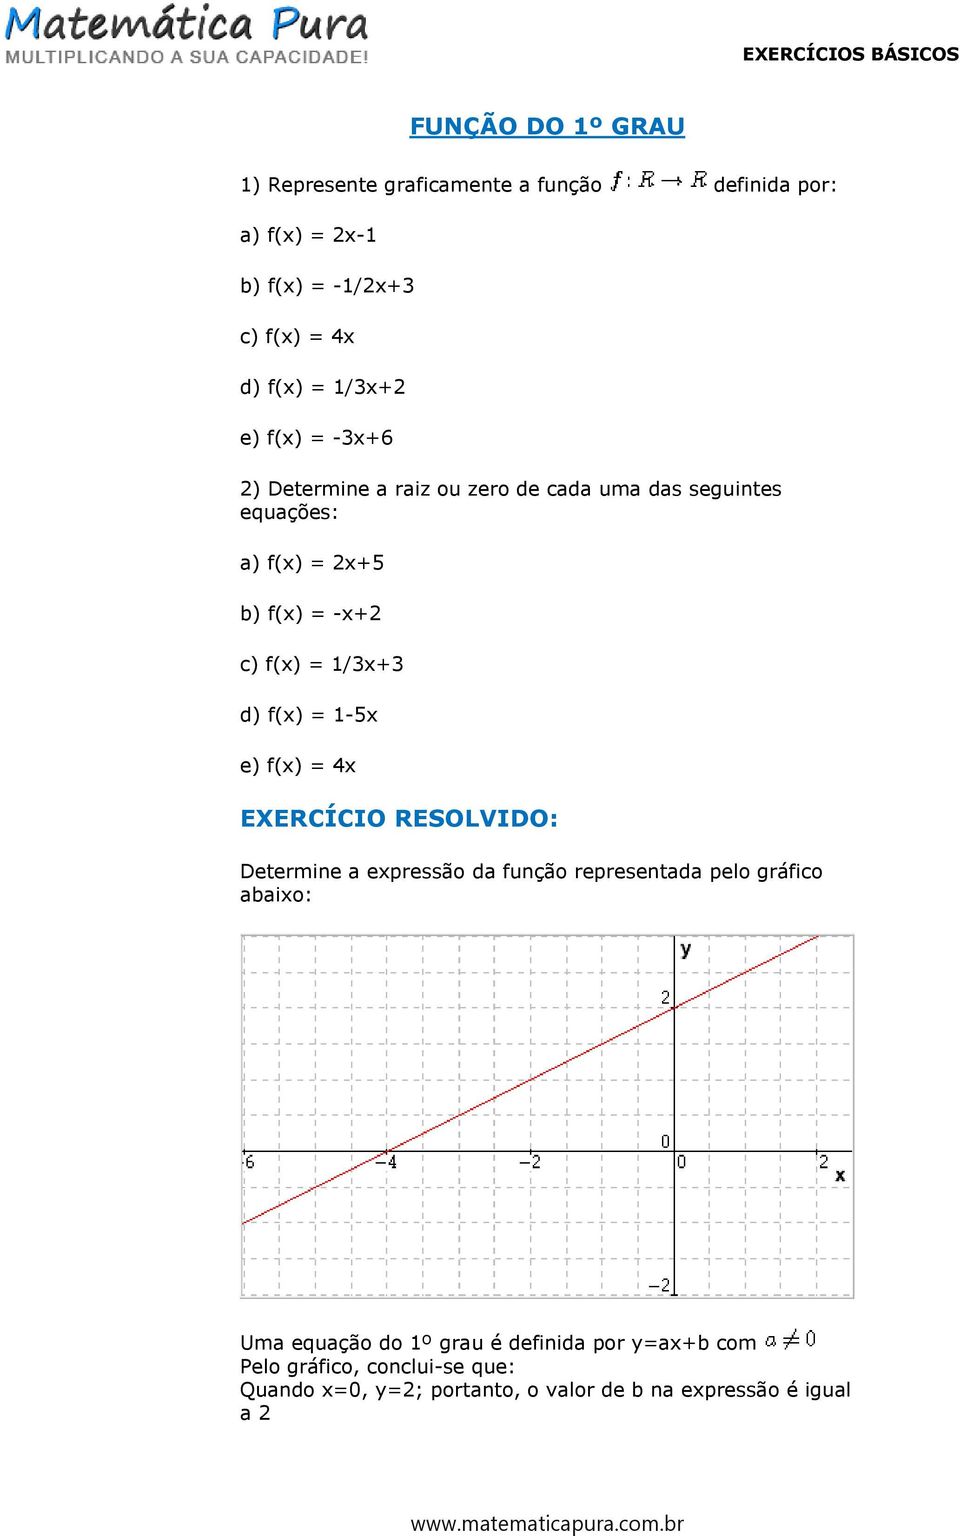 f(x) = 1-5x e) f(x) = 4x EXERCÍCIO RESOLVIDO: Determine a expressão da função representada pelo gráfico abaixo: Uma equação